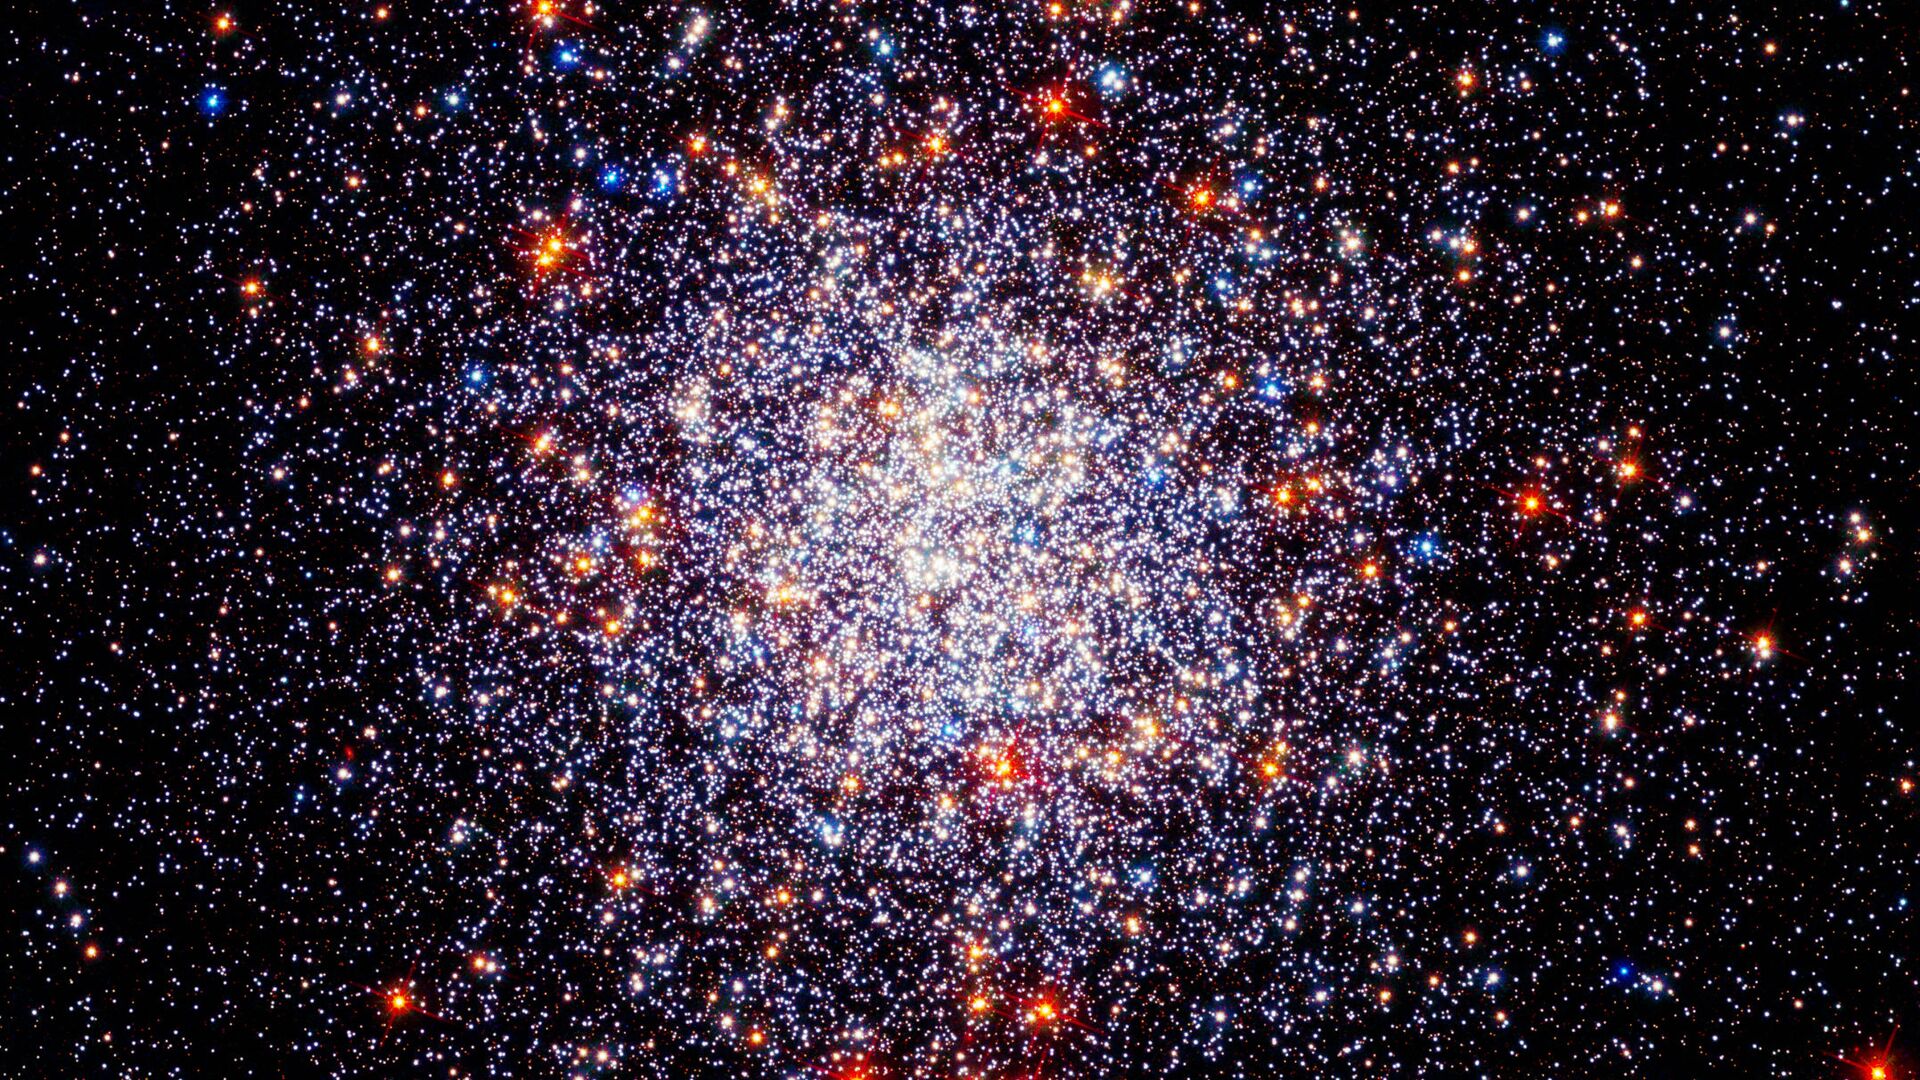 هذه الصورة للعنقود النجمي الكروي كالدويل 87 (أو إن جي سي 1261، هو عنقود مغلق في كوكبة الساعة) بين الملاحظات التي تم إجراؤها بواسطة كاميرا هابل واسعة المجال 3 في الضوء المرئي والأشعة فوق البنفسجية جنبًا إلى جنب مع الأشعة تحت الحمراء من الكاميرا المتقدمة للرصد الفلكي. ساعدت هذه الكاميرا علماء الفلك على تتبع حركات نجوم العنقود وفهم الوفرة الكيميائية للنجوم بشكل أفضل. - سبوتنيك عربي, 1920, 03.12.2021